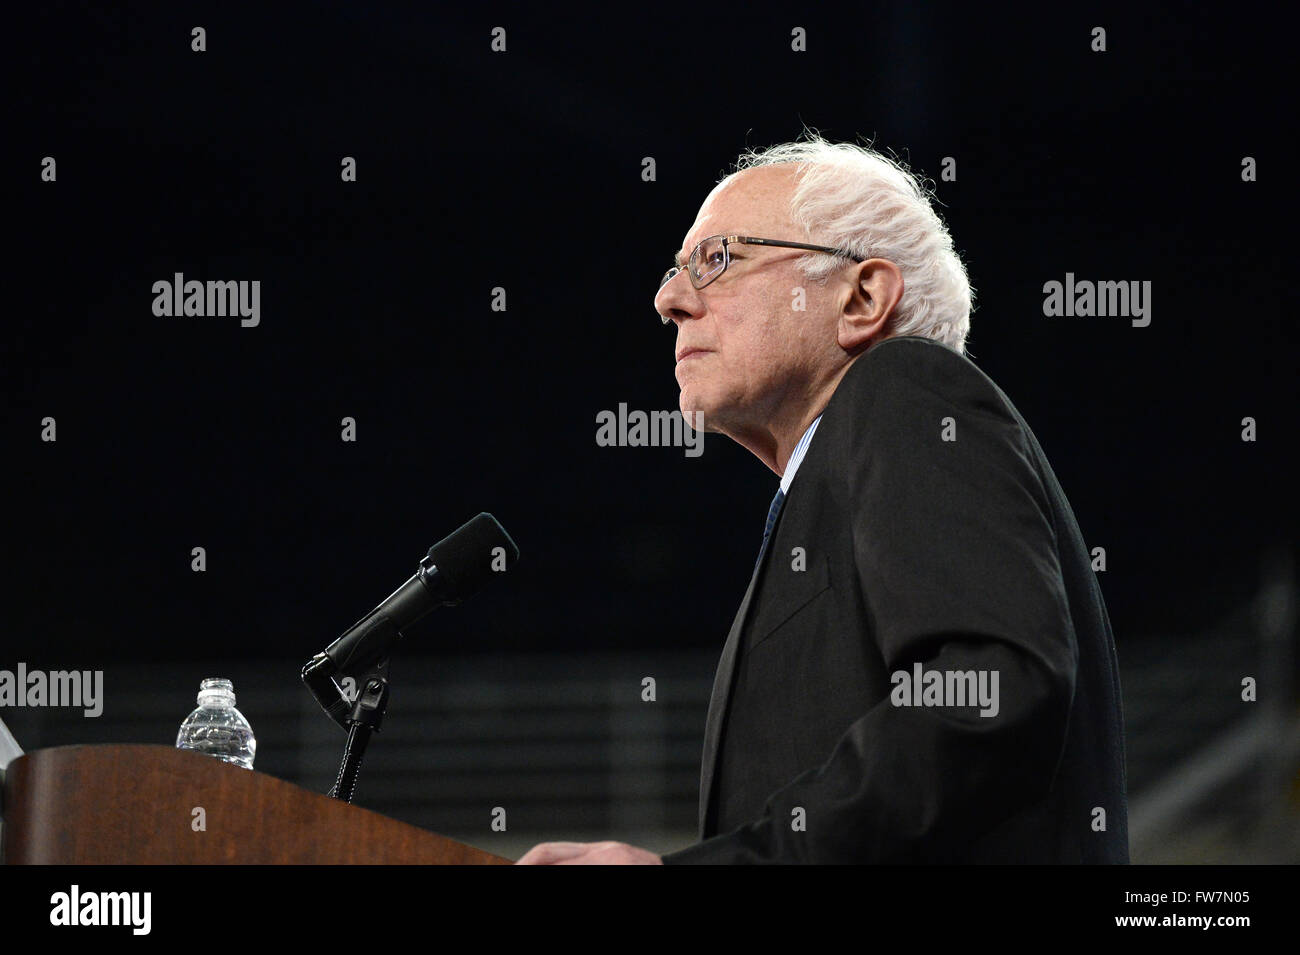 Saint Charles, MO, Estados Unidos - 14 de marzo de 2016: Senador norteamericano y candidato presidencial demócrata Bernie Sanders habla en el rallye. Foto de stock